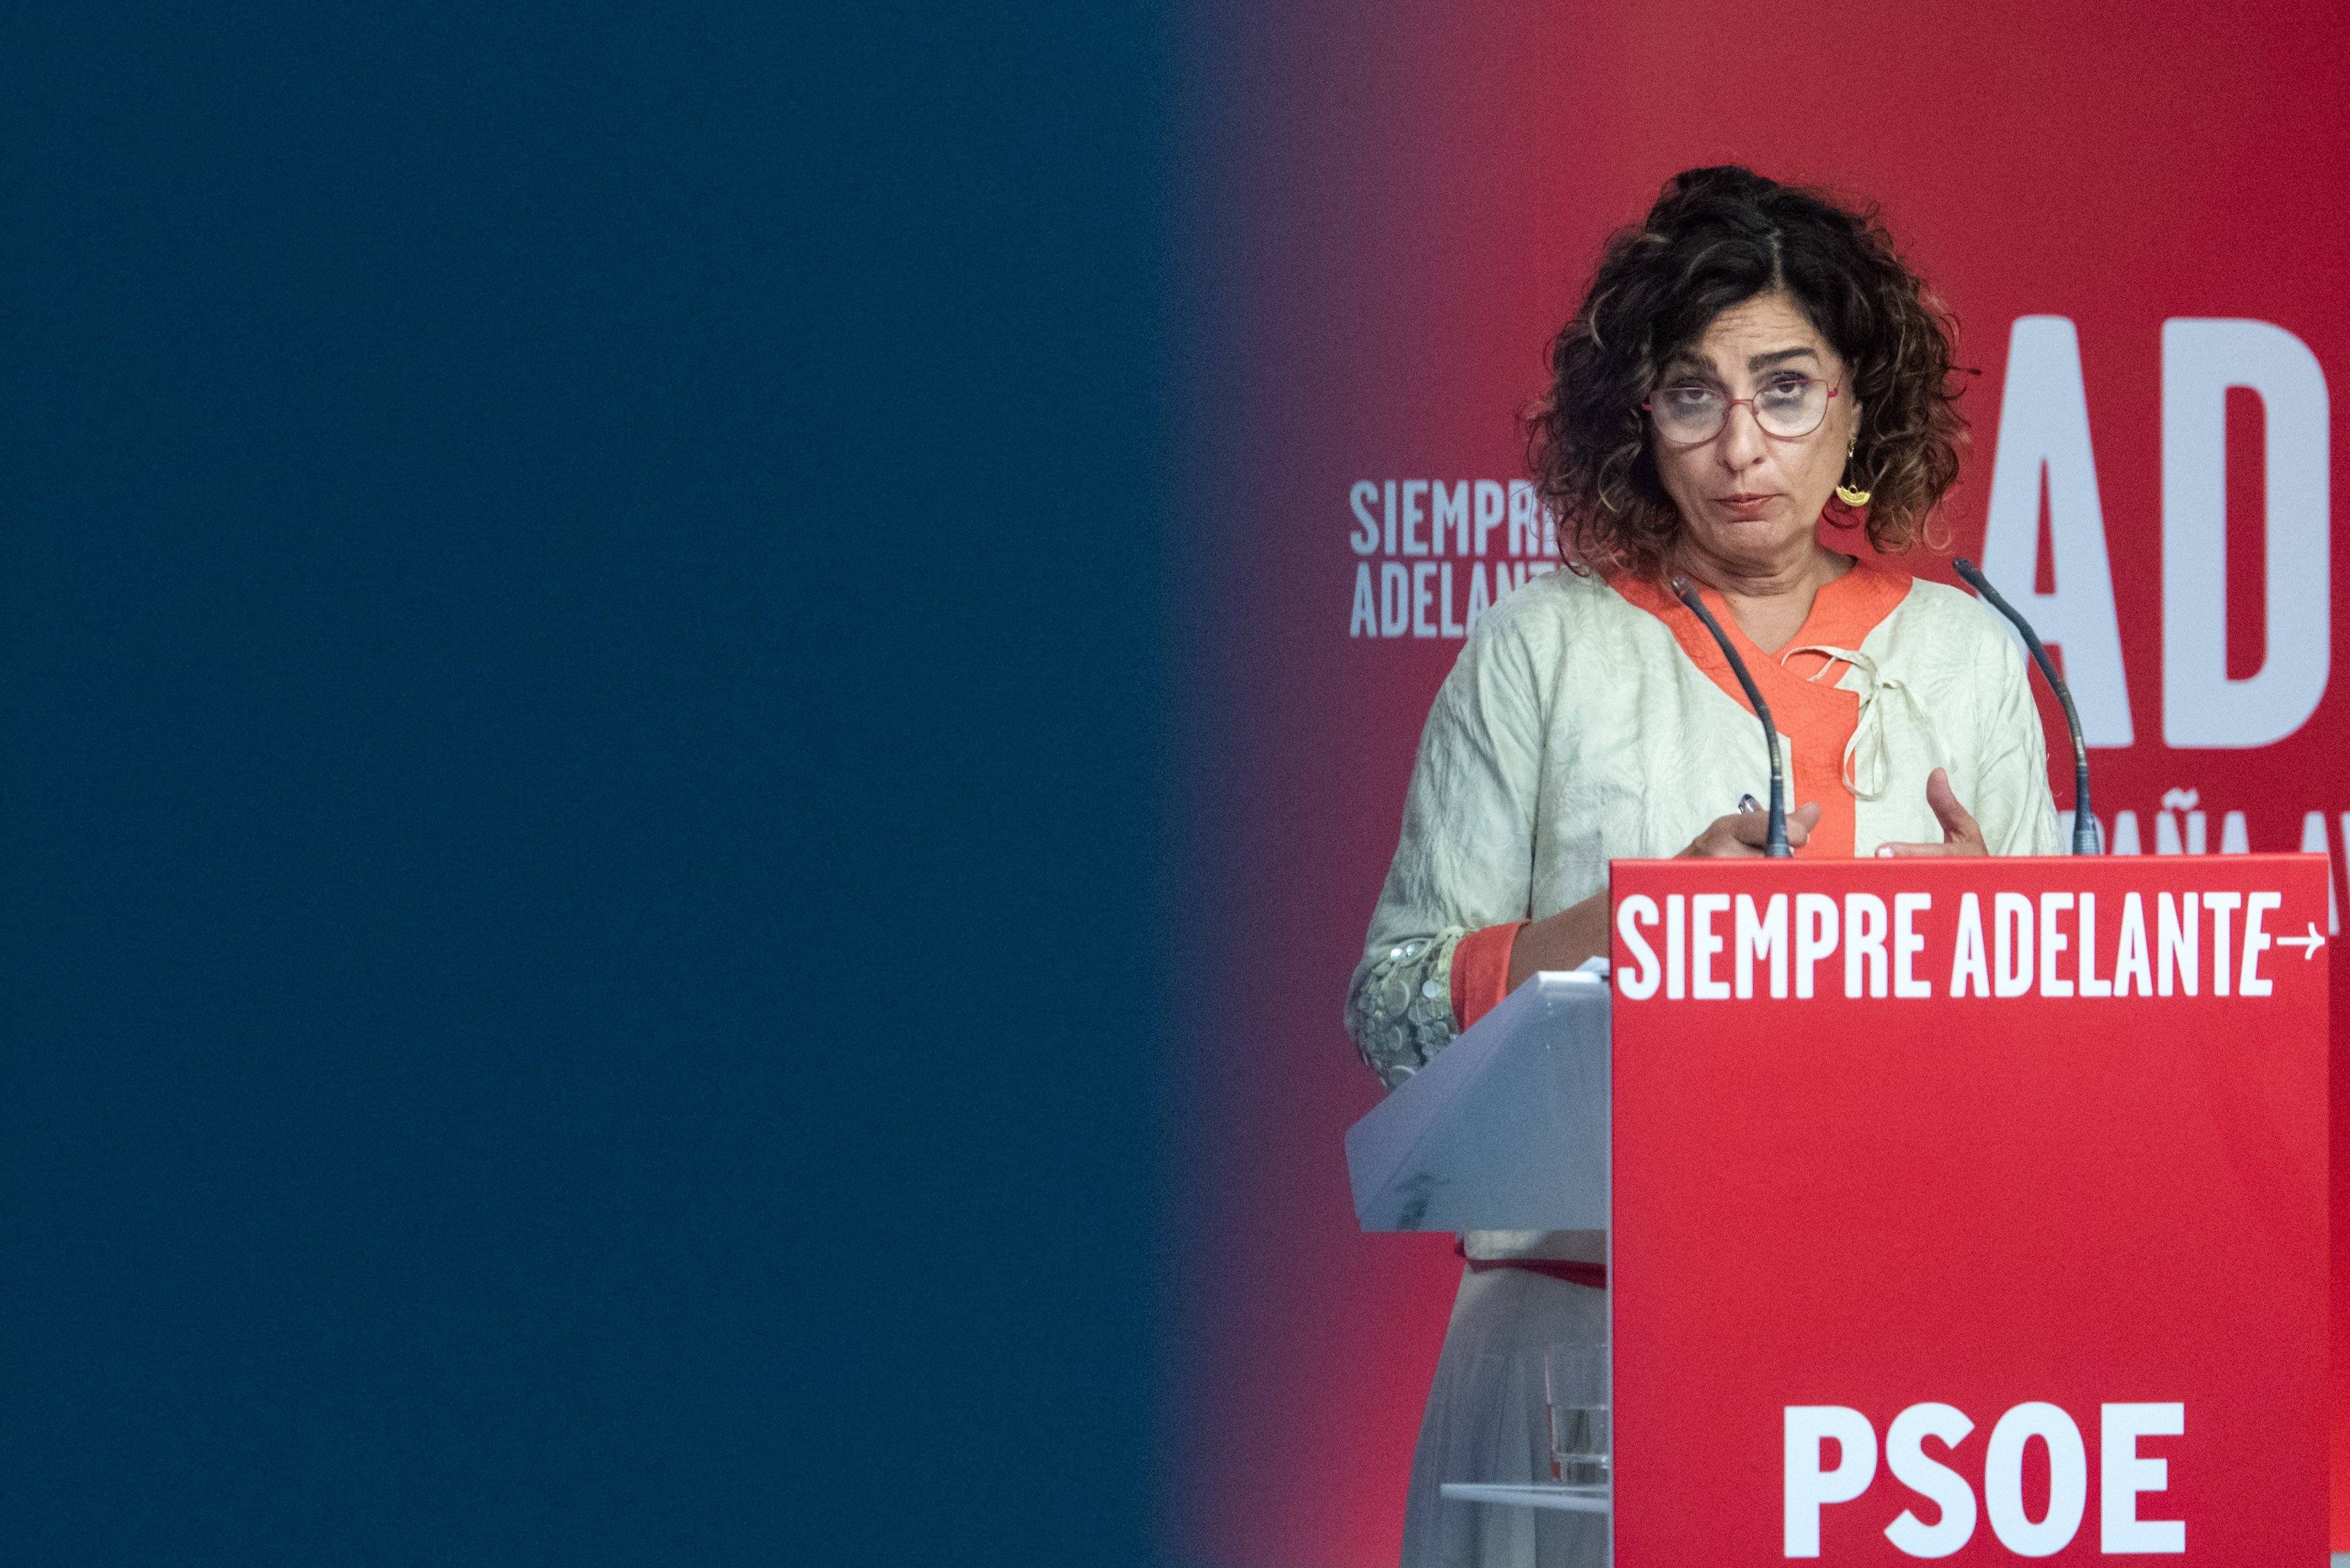 El PSOE quita hierro a los discursos "de máximos" de ERC y Junts porque "conocen los límites"